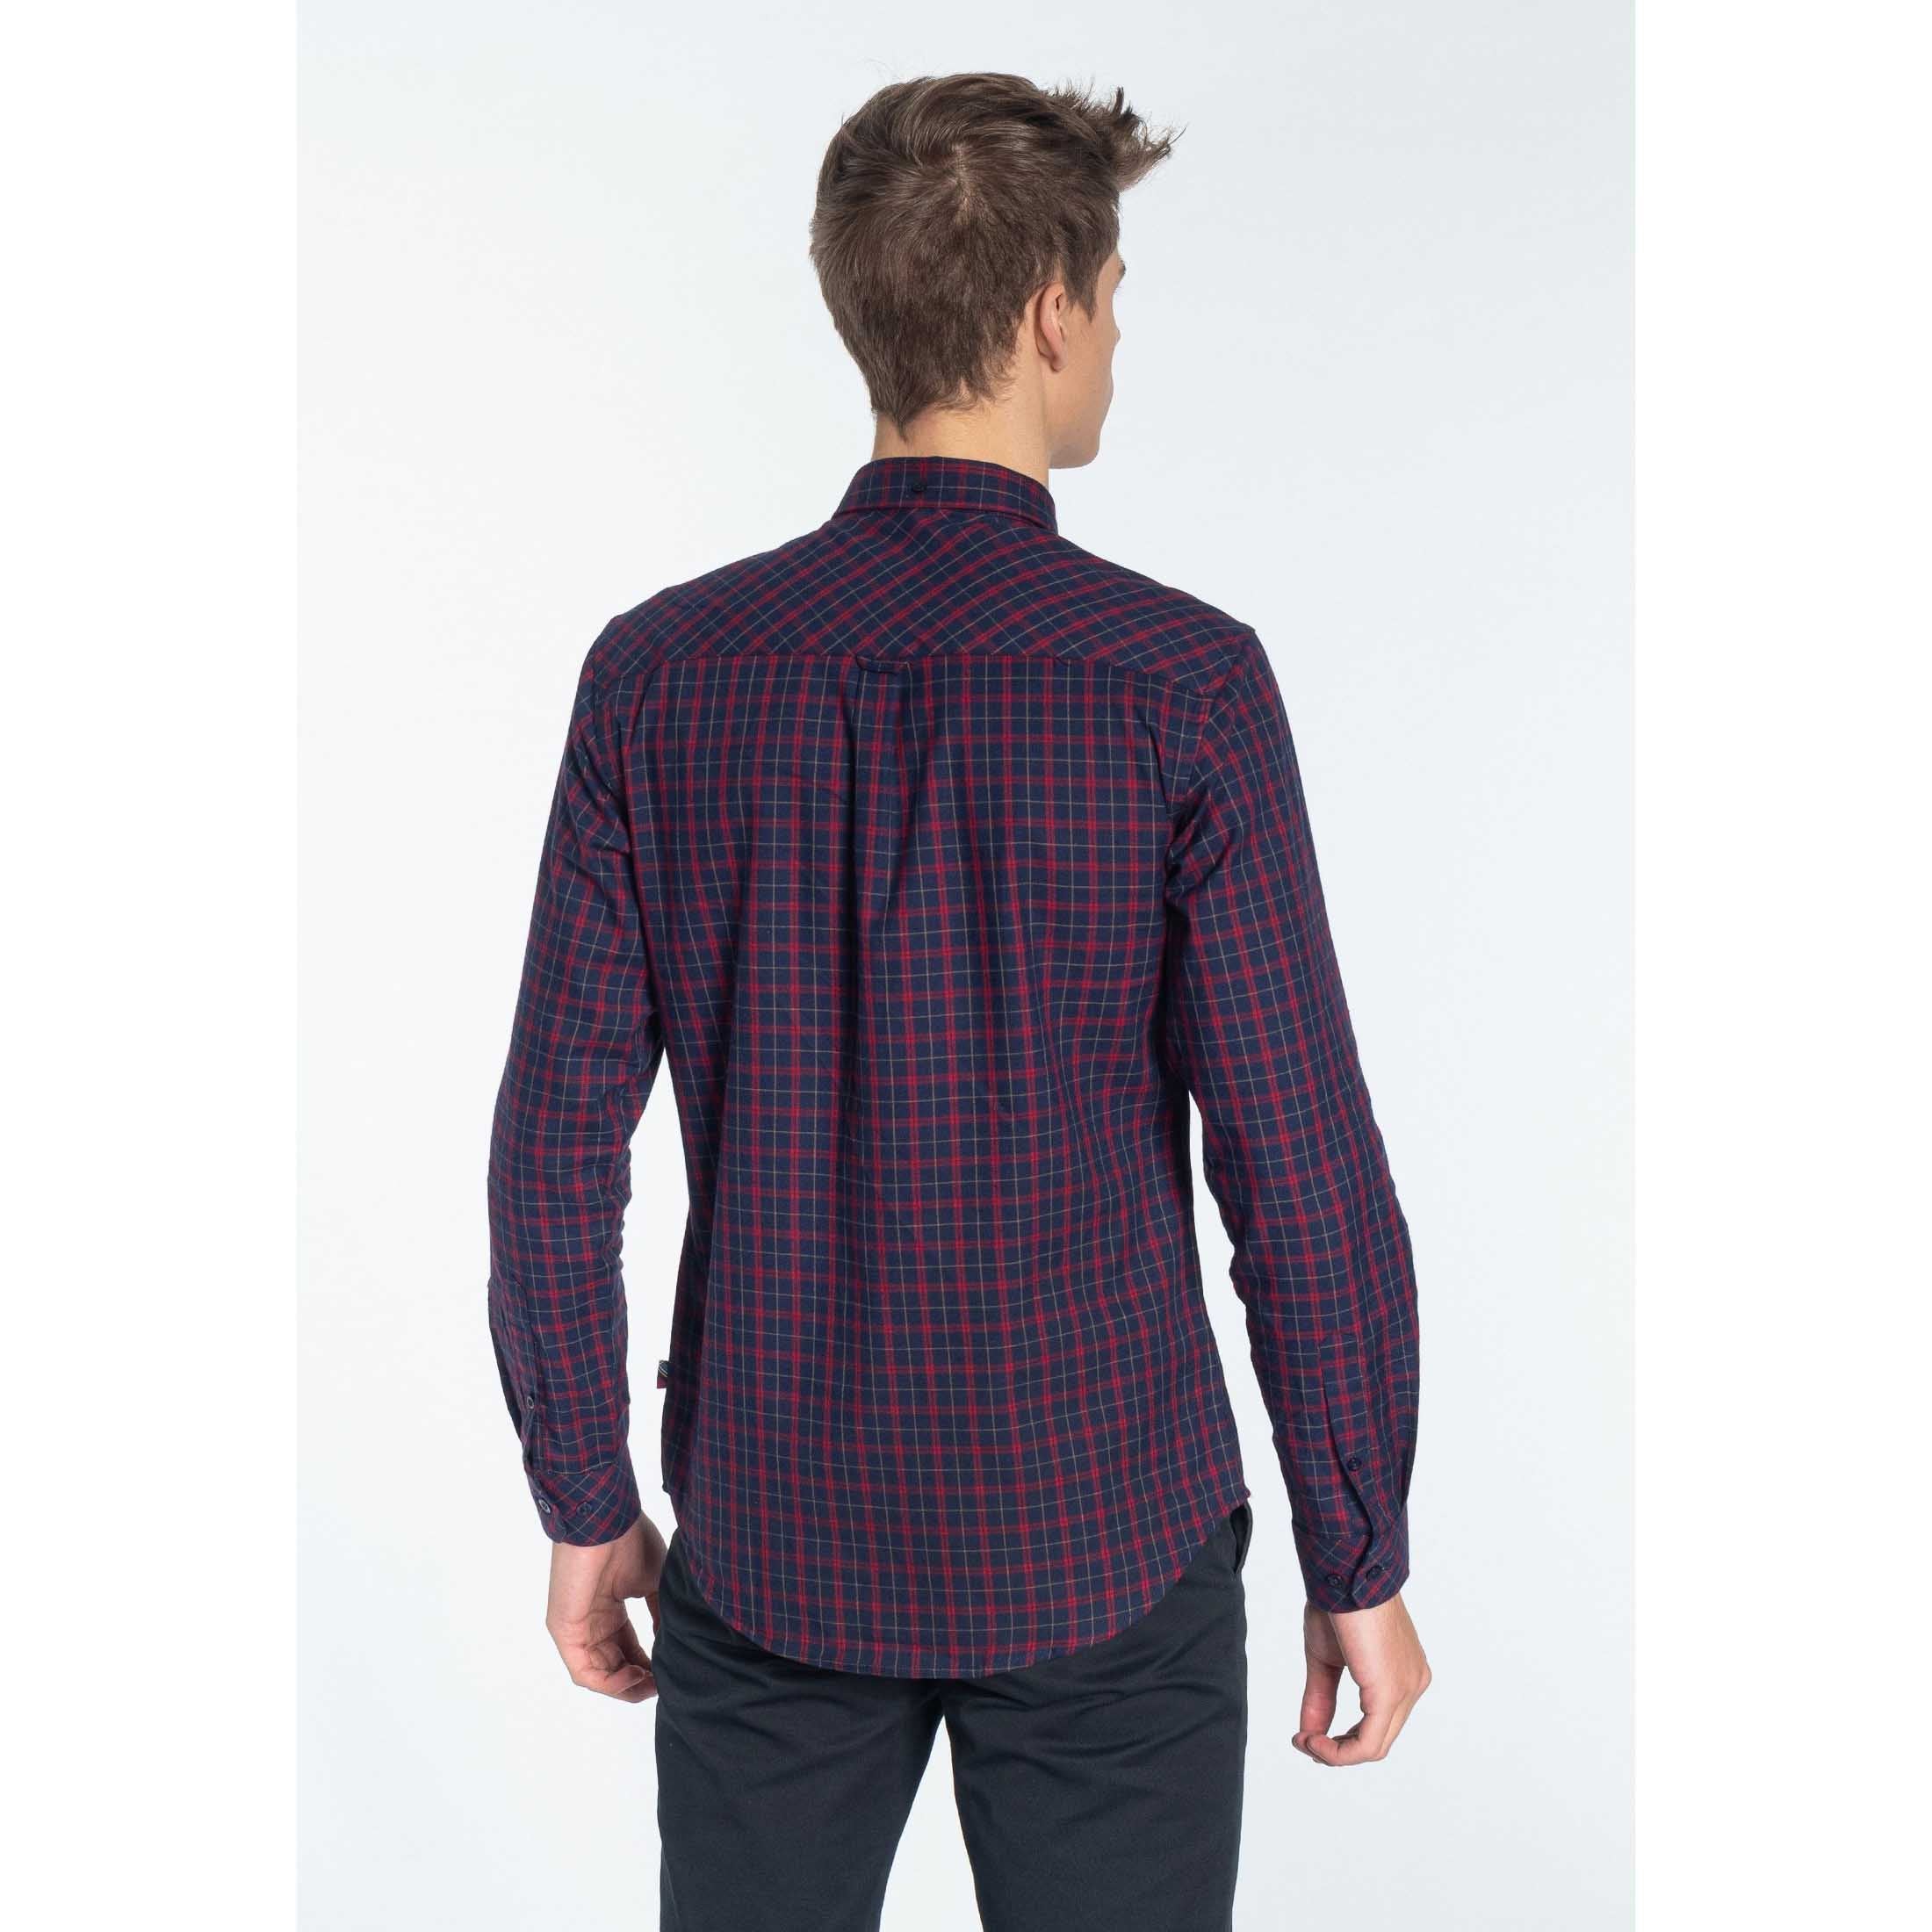 Keller Flannel Shirt - Merc